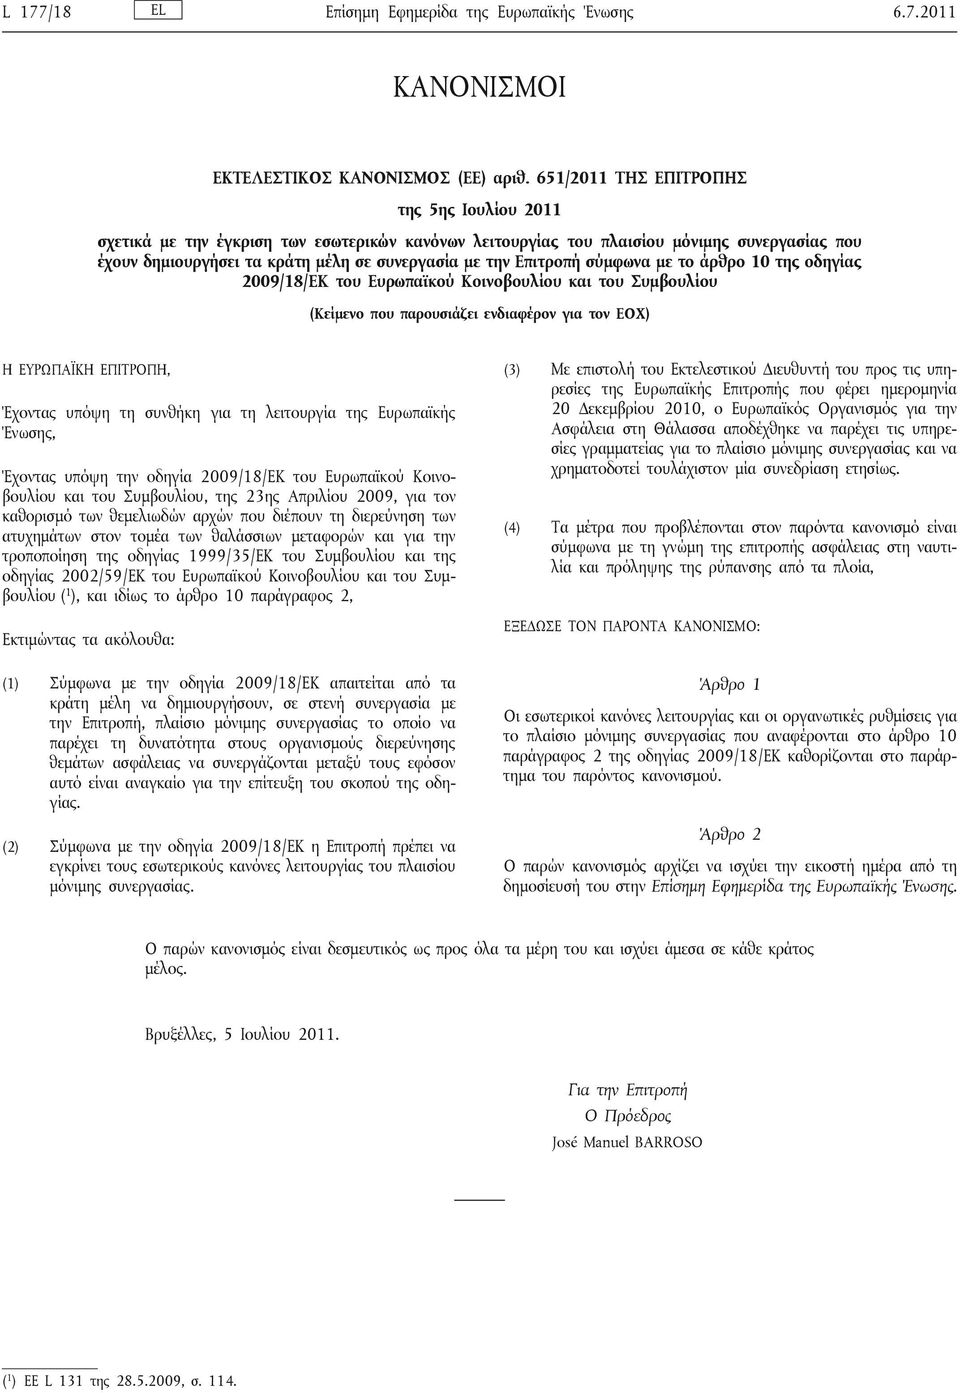 Επιτροπή σύμφωνα με το άρθρο 10 της οδηγίας 2009/18/ΕΚ του Ευρωπαϊκού Κοινοβουλίου και του Συμβουλίου (Κείμενο που παρουσιάζει ενδιαφέρον για τον ΕΟΧ) Η ΕΥΡΩΠΑΪΚΗ ΕΠΙΤΡΟΠΗ, Έχοντας υπόψη τη συνθήκη